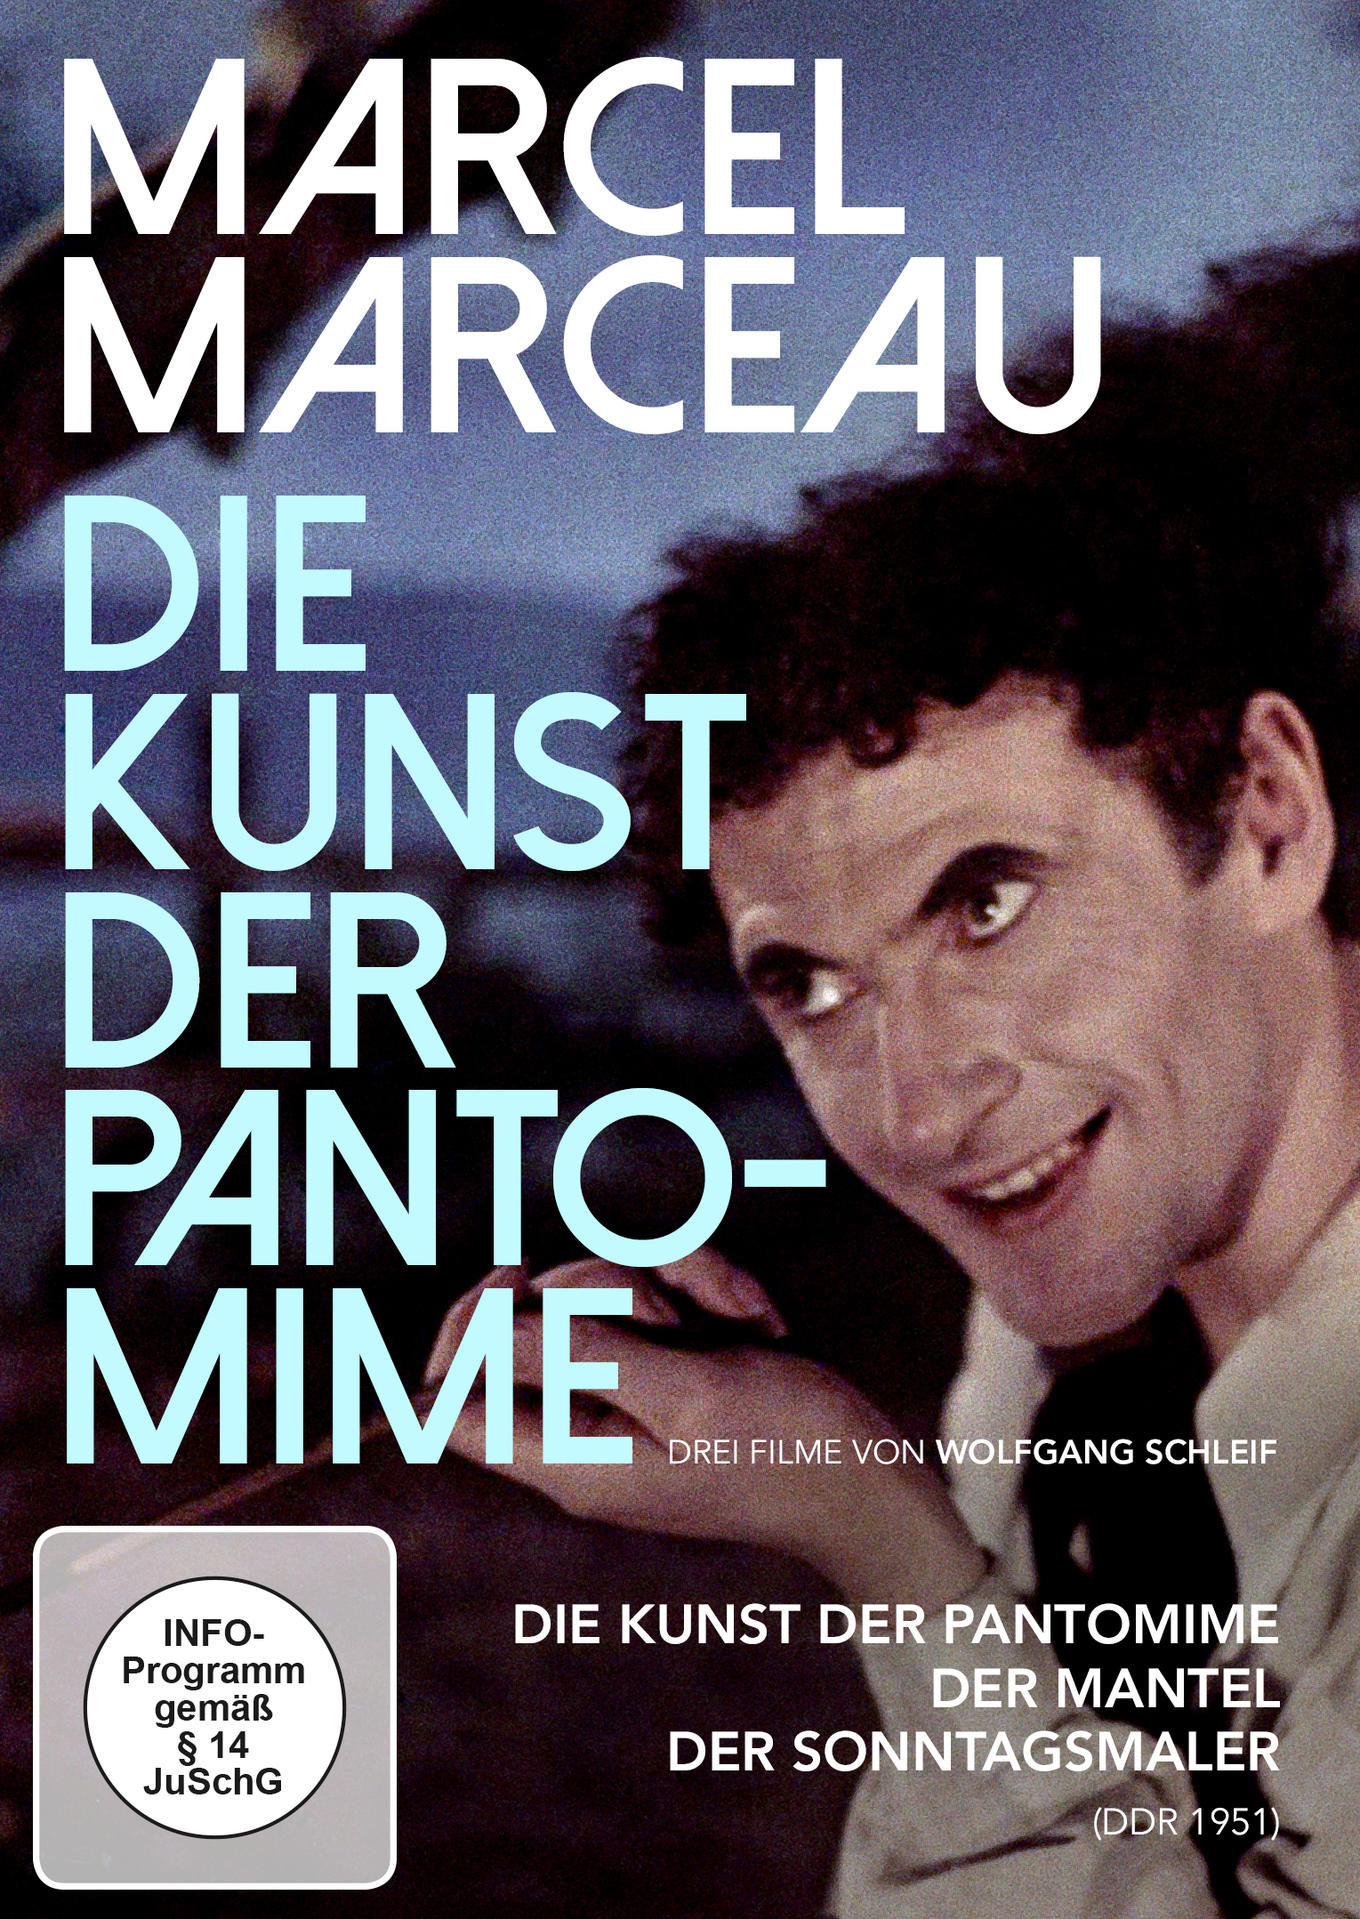 DVD Marceau Pantomime Die Marcel der Kunst -